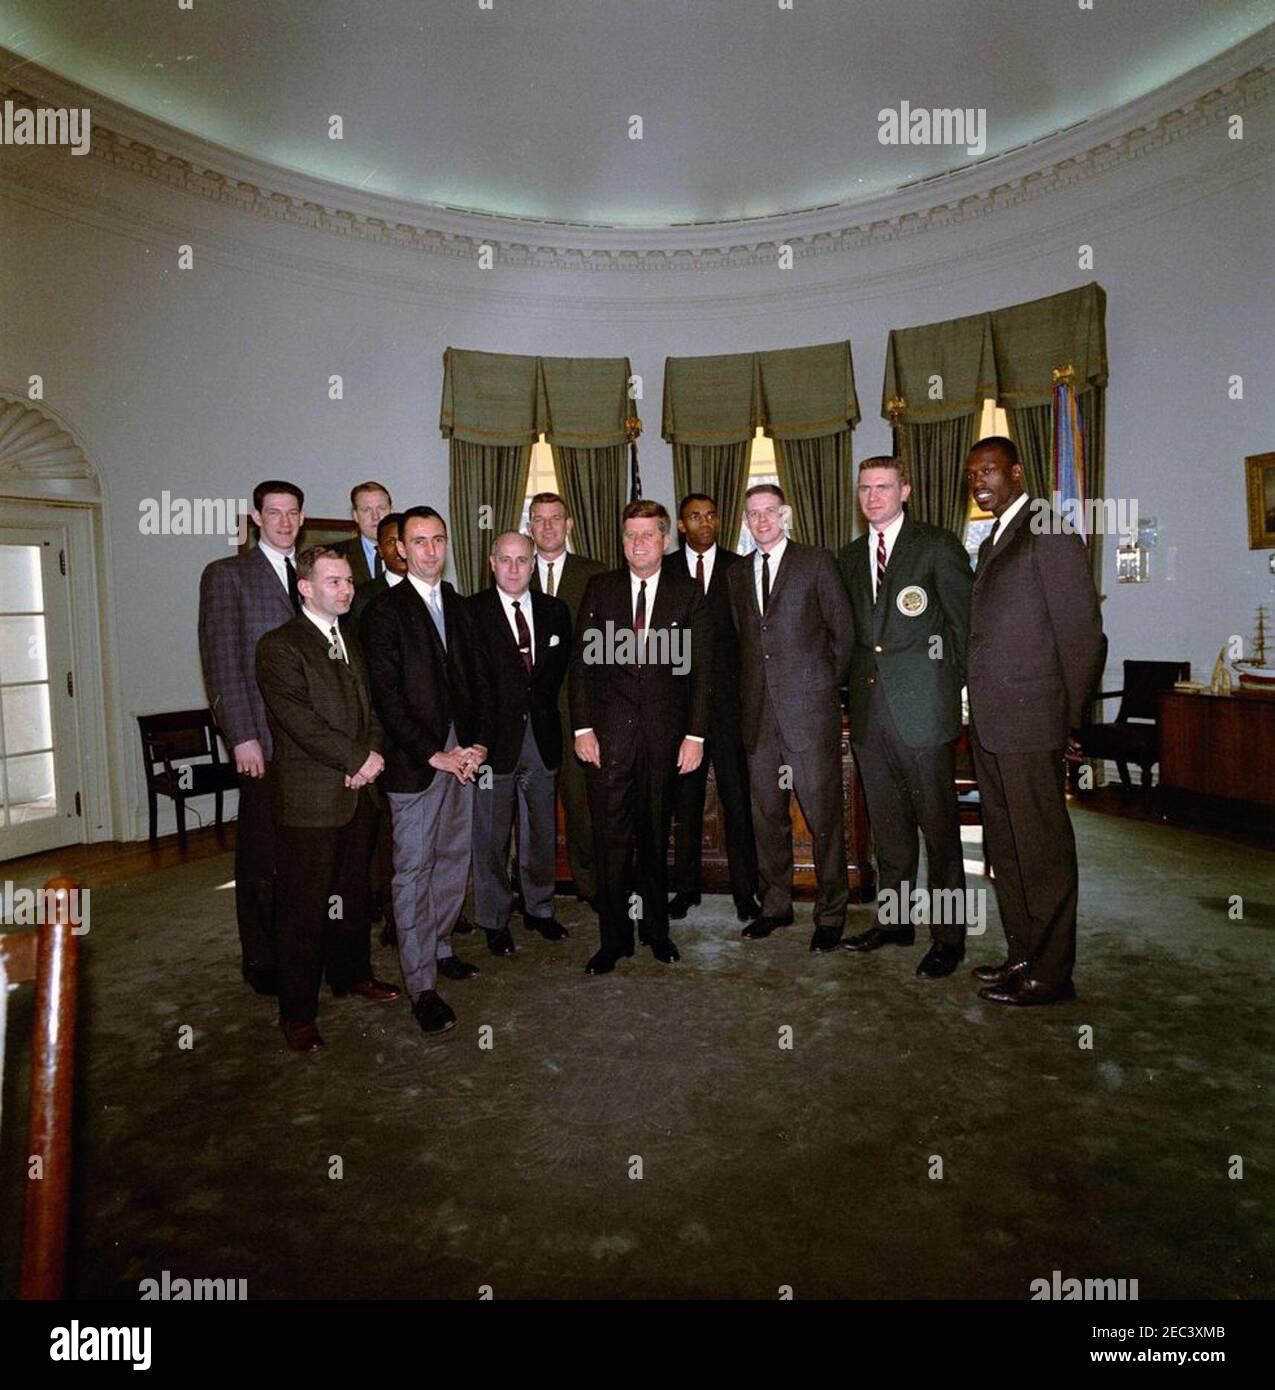 Visite de l'équipe de basket-ball Boston Celtics, 13:00. Les membres de l'équipe de Boston Celtics de la National Basketball Association (NBA) visitent le Président John F. Kennedy dans le Bureau ovale lors d'une visite de la Maison Blanche. (G-D) Edward G. u0022Buddyu0022 Leroux, Jr.; John Havlicek (à l'arrière); Bob Cousy; K. C. Jones (partiellement caché derrière M. Cousy); Clyde Lovellette (à l'arrière); Coach Red Auerbach; Jim Lostoff (à l'arrière); Président Kennedy; Sam Jones; Frank Ramsey; Tom Heinsohn; Tom Sanders et Tom. Washington, D.C. Banque D'Images